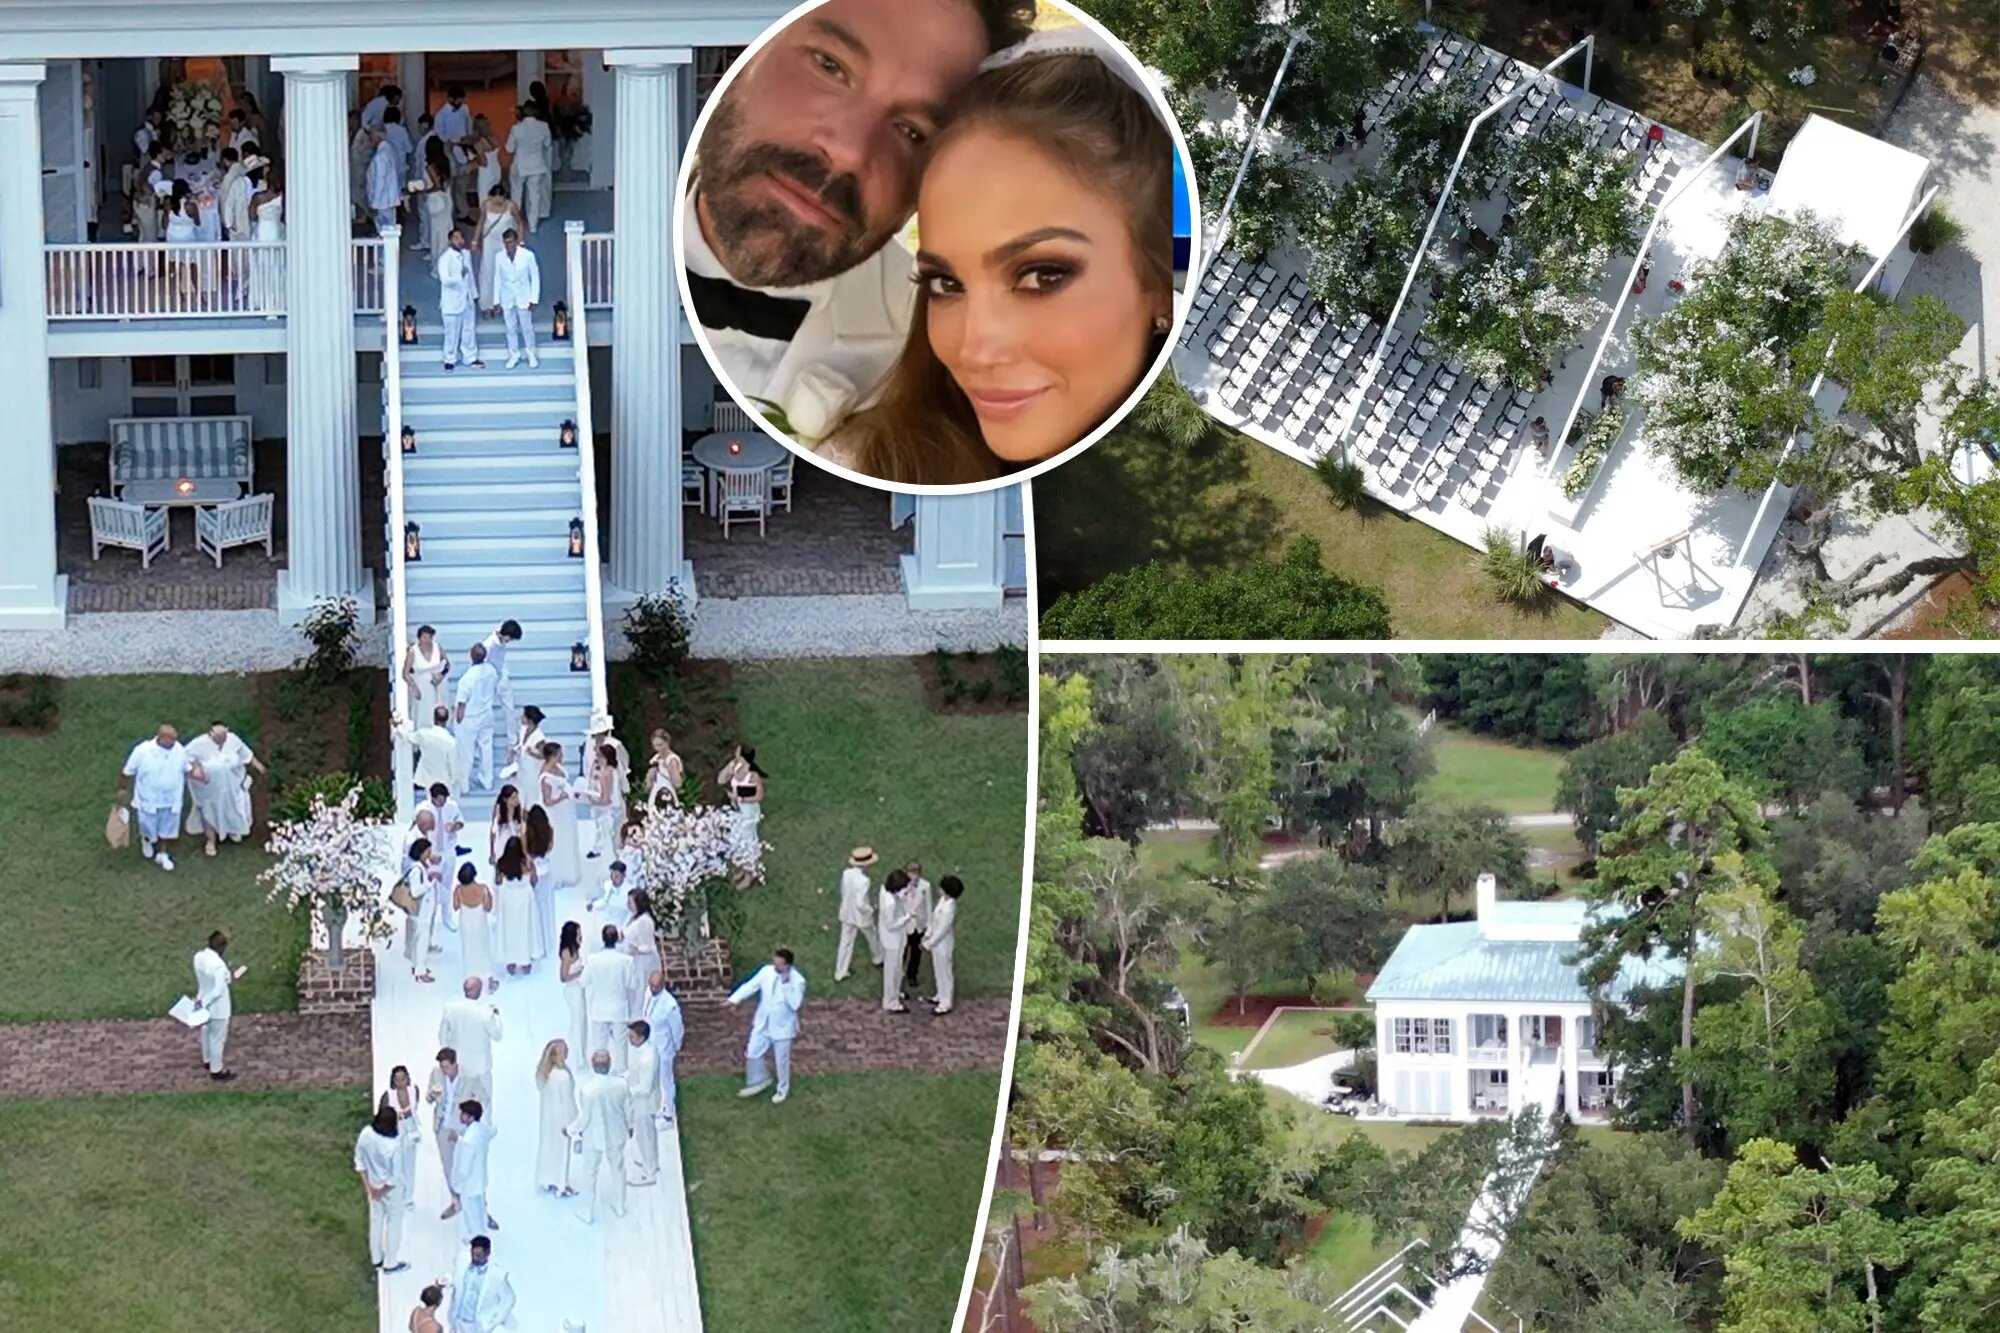 Jennifer Lopez & Ben Affleck: A love rekindled - The journey from split to spouse